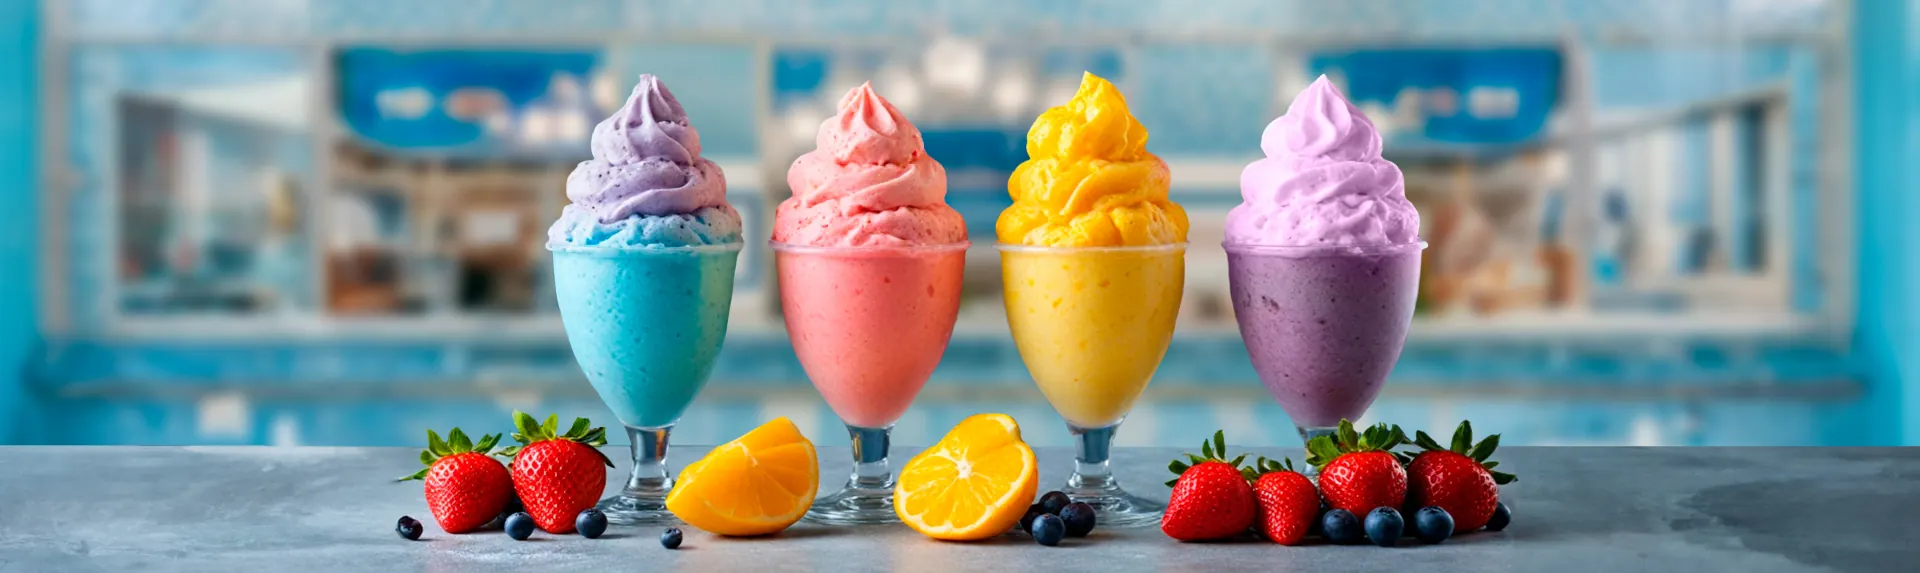 Sorbetes de diferentes sabores servidos en copas de cristal y decorados con frutas para portada de artículo